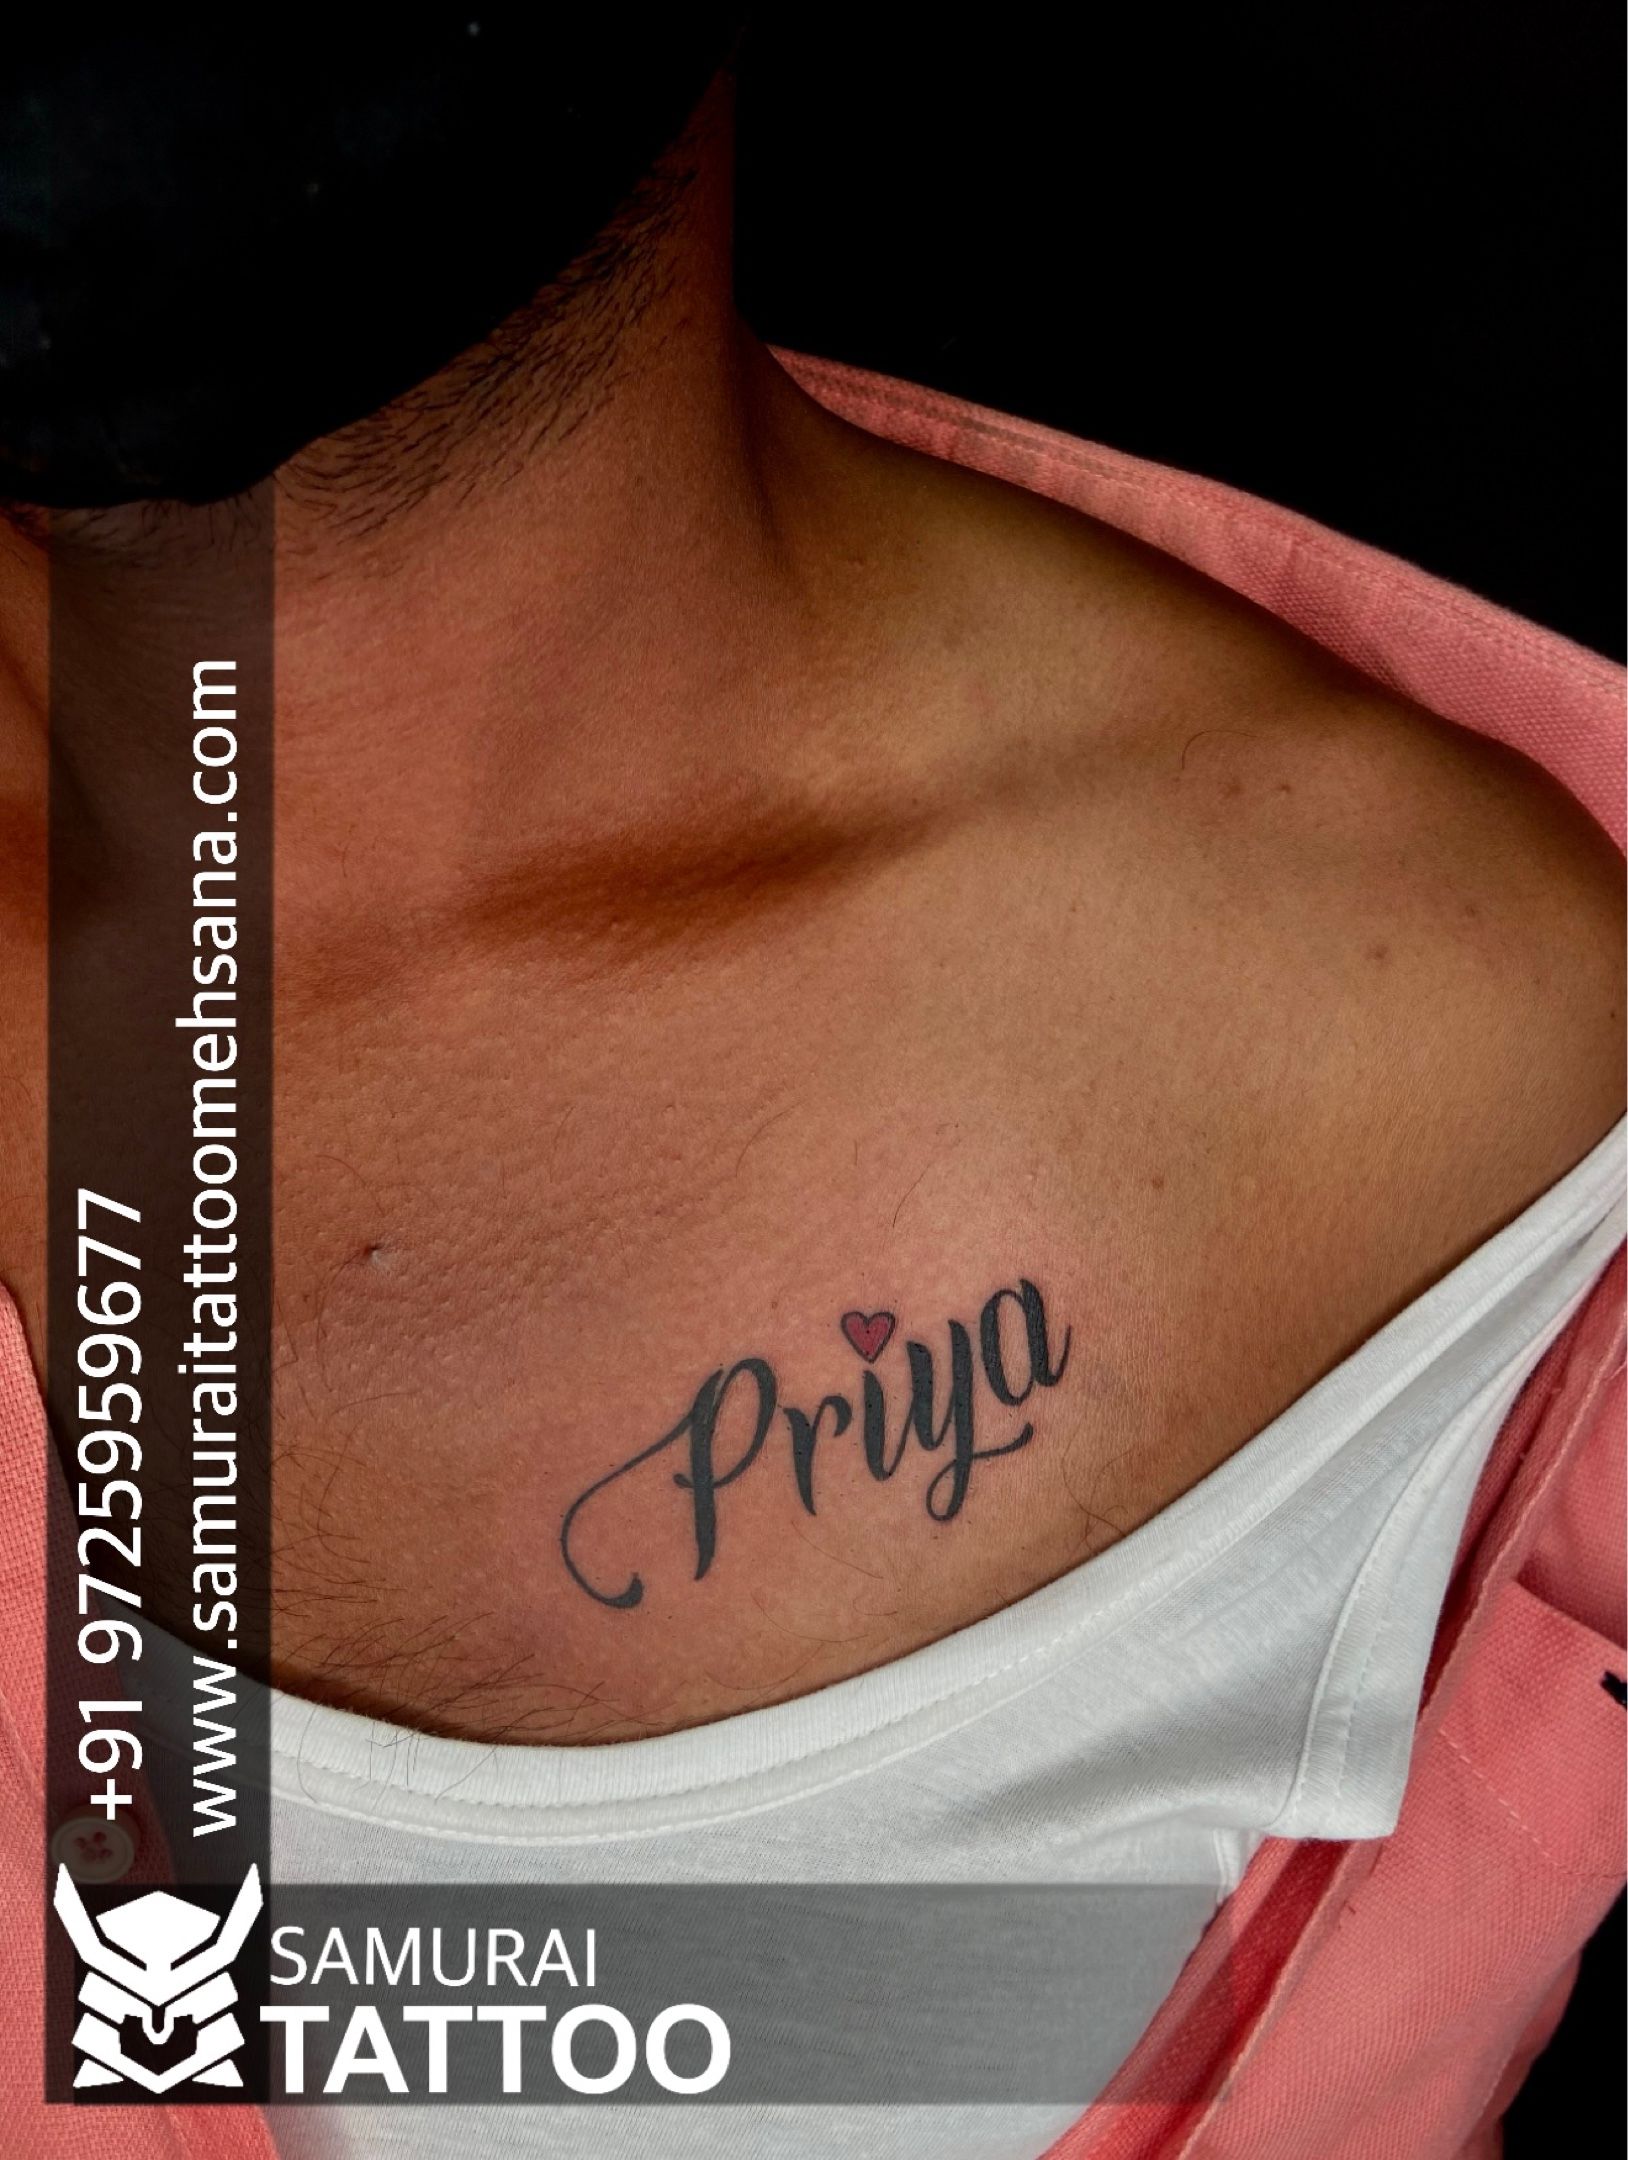 Tattoo uploaded by Samurai Tattoo mehsana  Priya name tattoo Priya tattoo  Priya font tattoo Priya tattoo ideas  Tattoodo